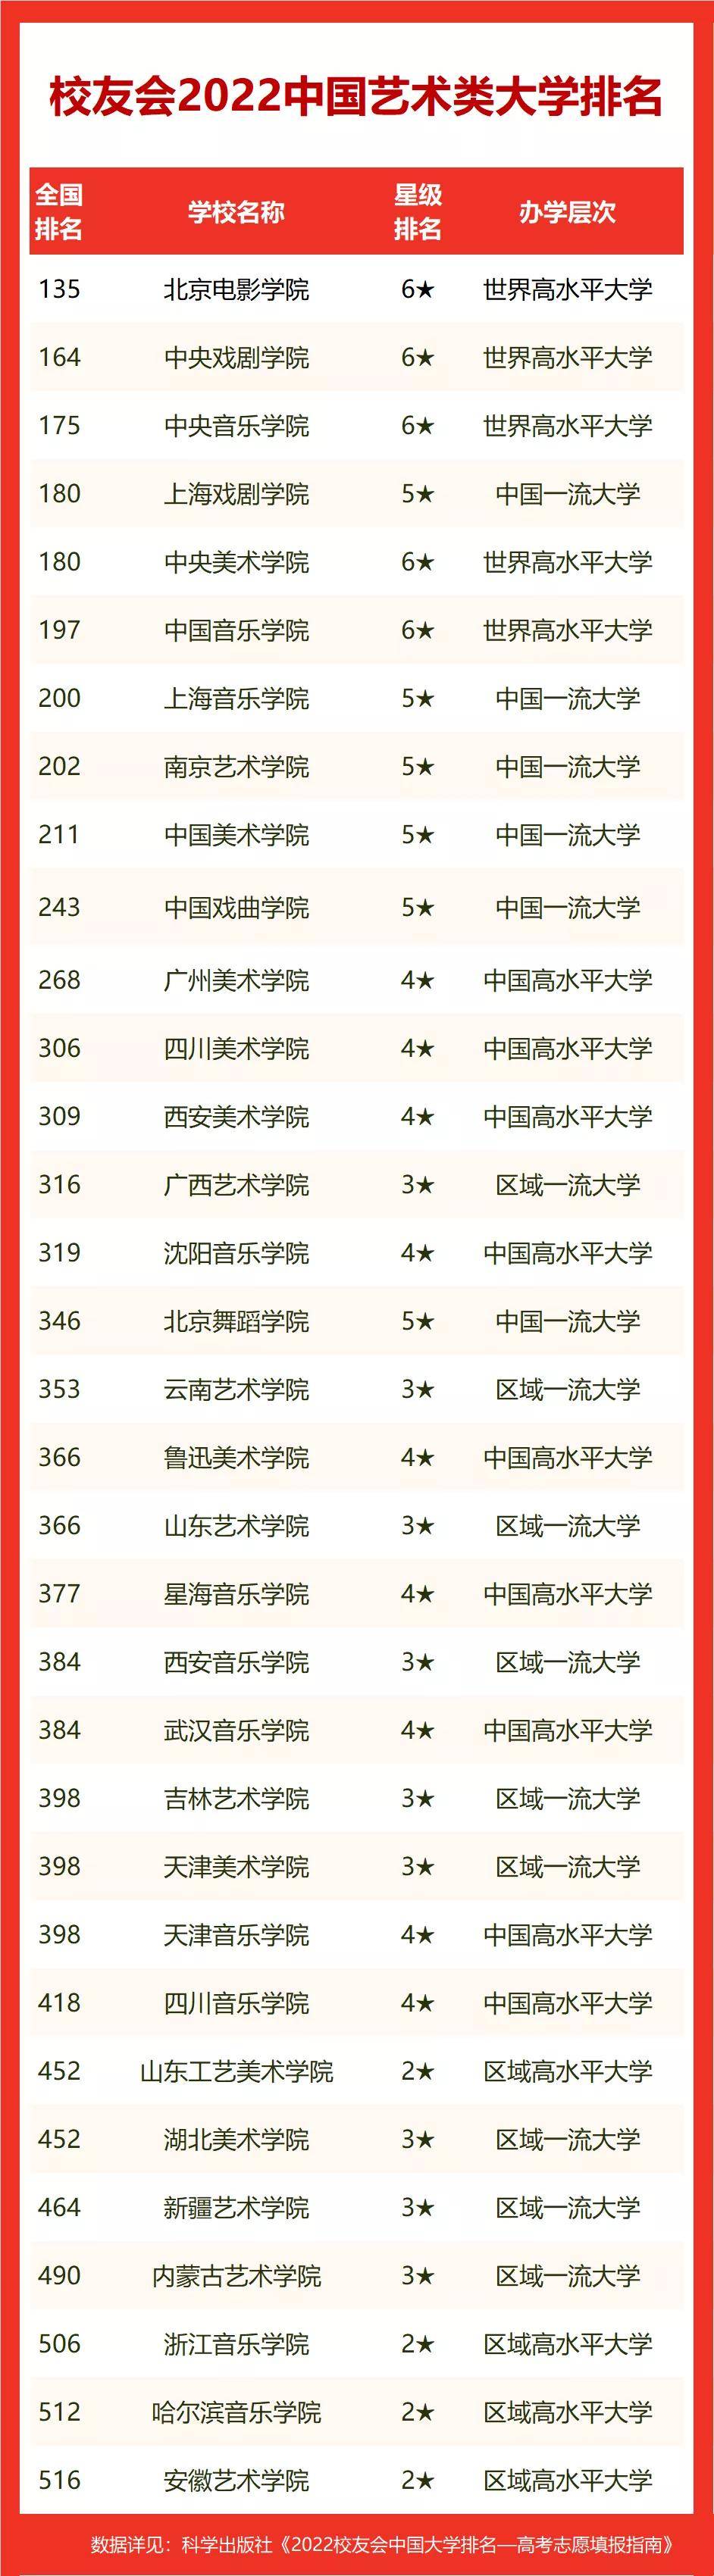 北京一类大学排行榜_重磅:2022校友会中国综合类大学排名,北京大学连续15年问鼎第一